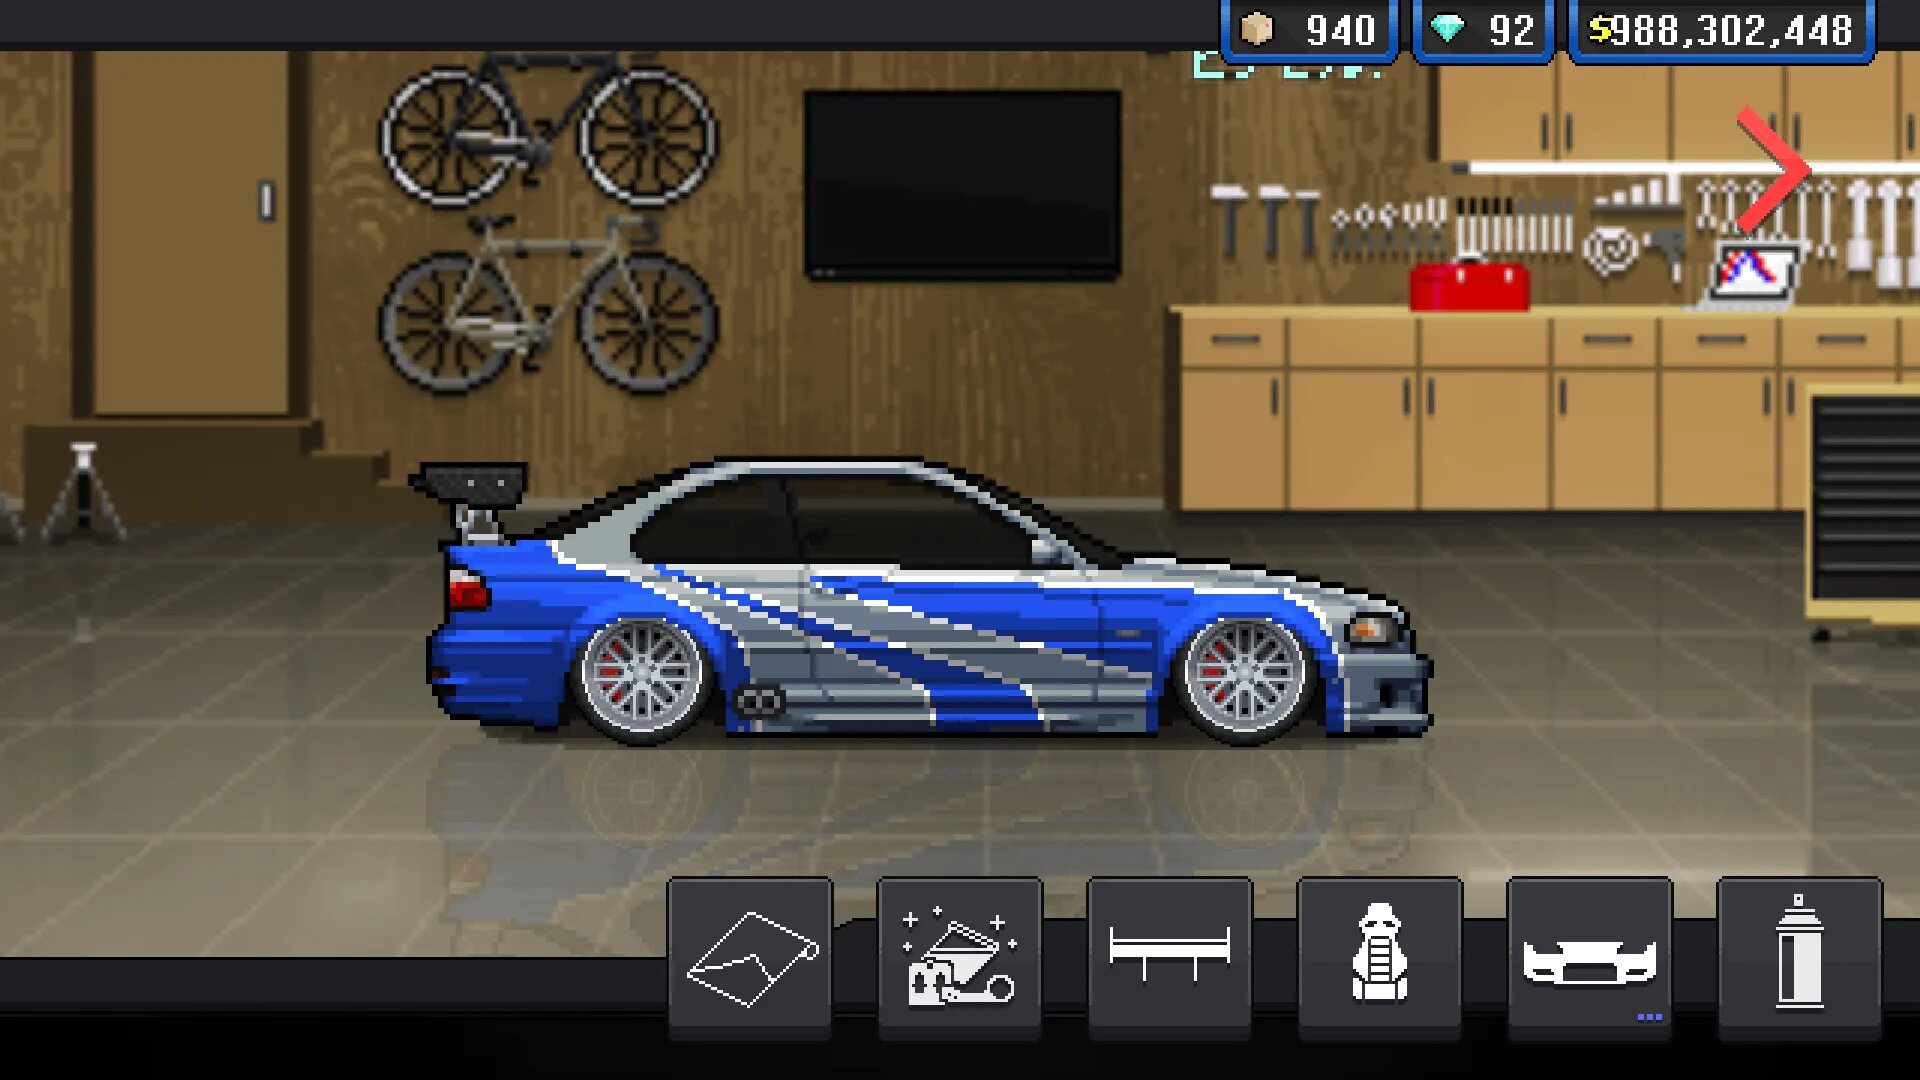 Pixel car Racer BMW m3 GTR. БМВ м3 GTR. BMW m3 e46 GTR Pixel car Racer. BMW m3 GTR. Машины игры зломка